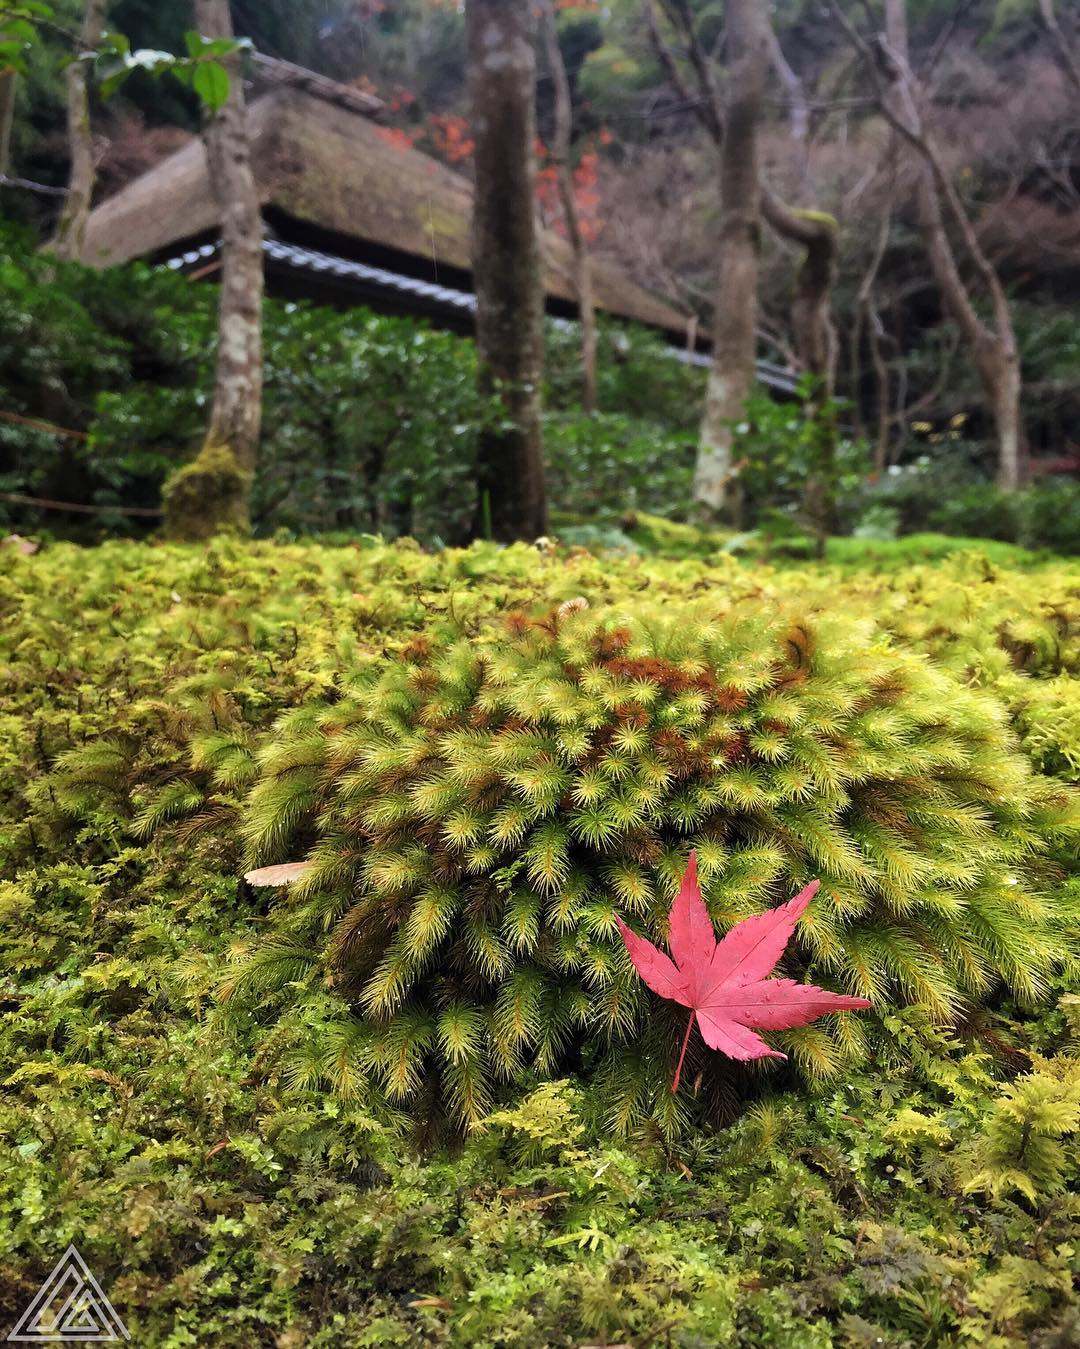 Balade à Kyoto aujourd'hui avec des voyageurs fidèles aux safaris photo. 
Pour info, cette photo a été prise avec un #iPhone 6. Nos balades vous apprennent déjà à faire des trucs chouettes avec vos smartphones, si c'est l'unique matériel que vous avez. Ne les sous-estimez pas :)